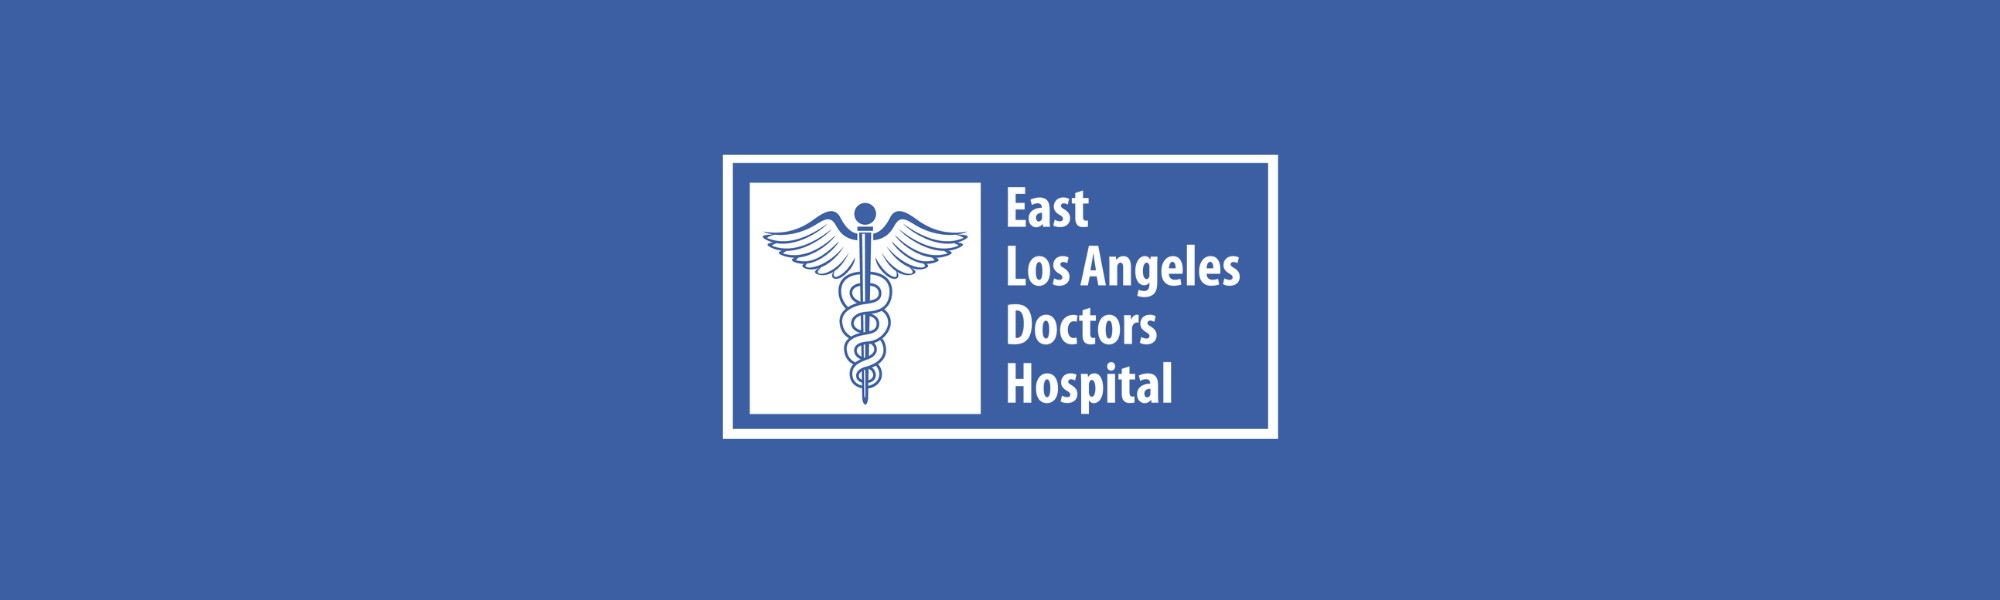 East Los Angeles Doctors